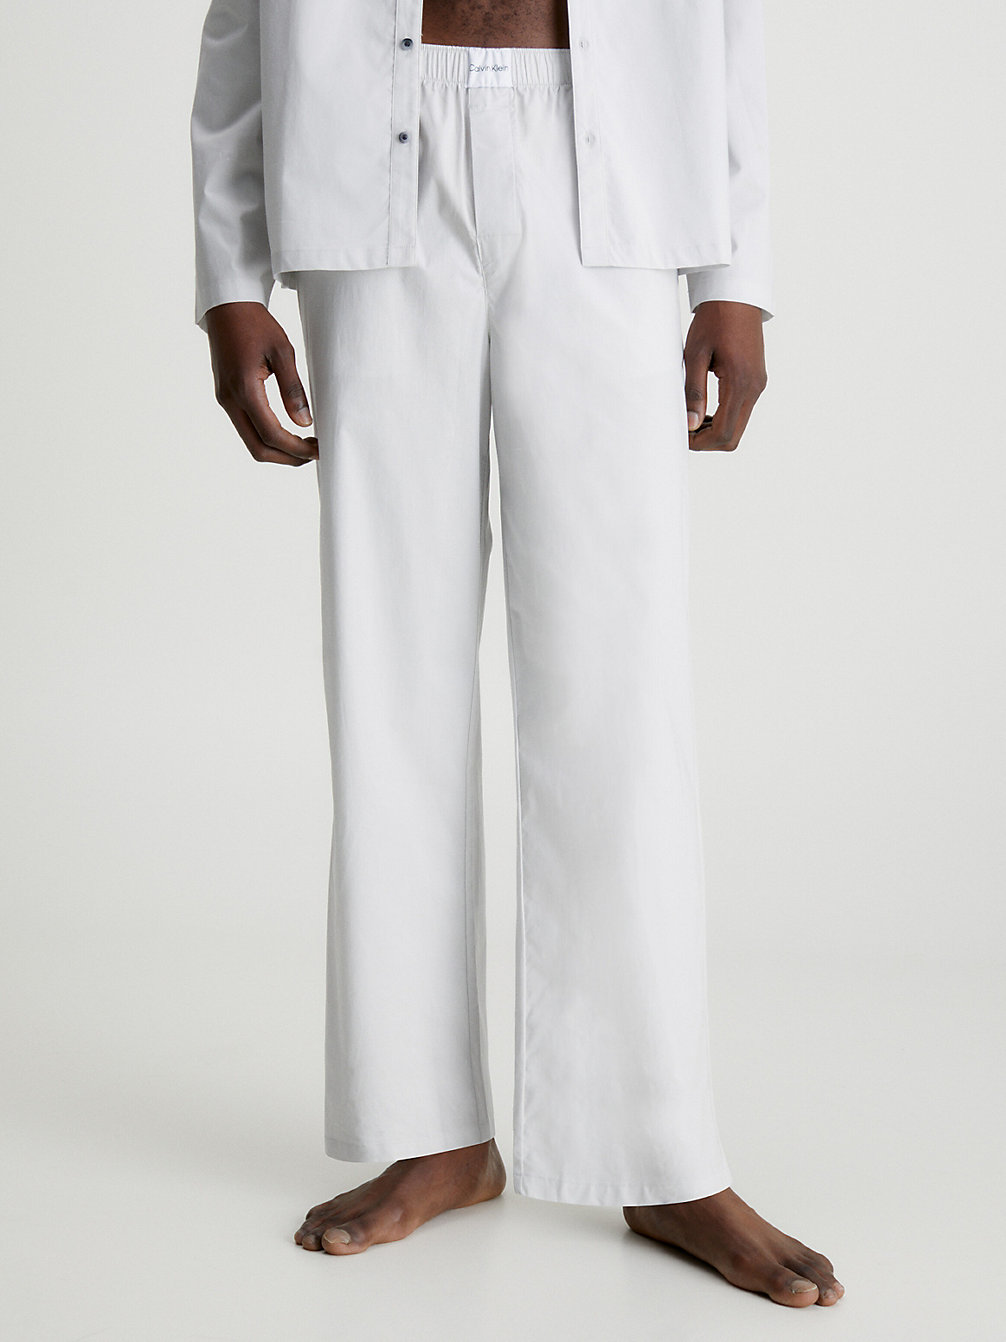 GALAXY GREY > Spodnie Od Piżamy - Pure Cotton > undefined Mężczyźni - Calvin Klein